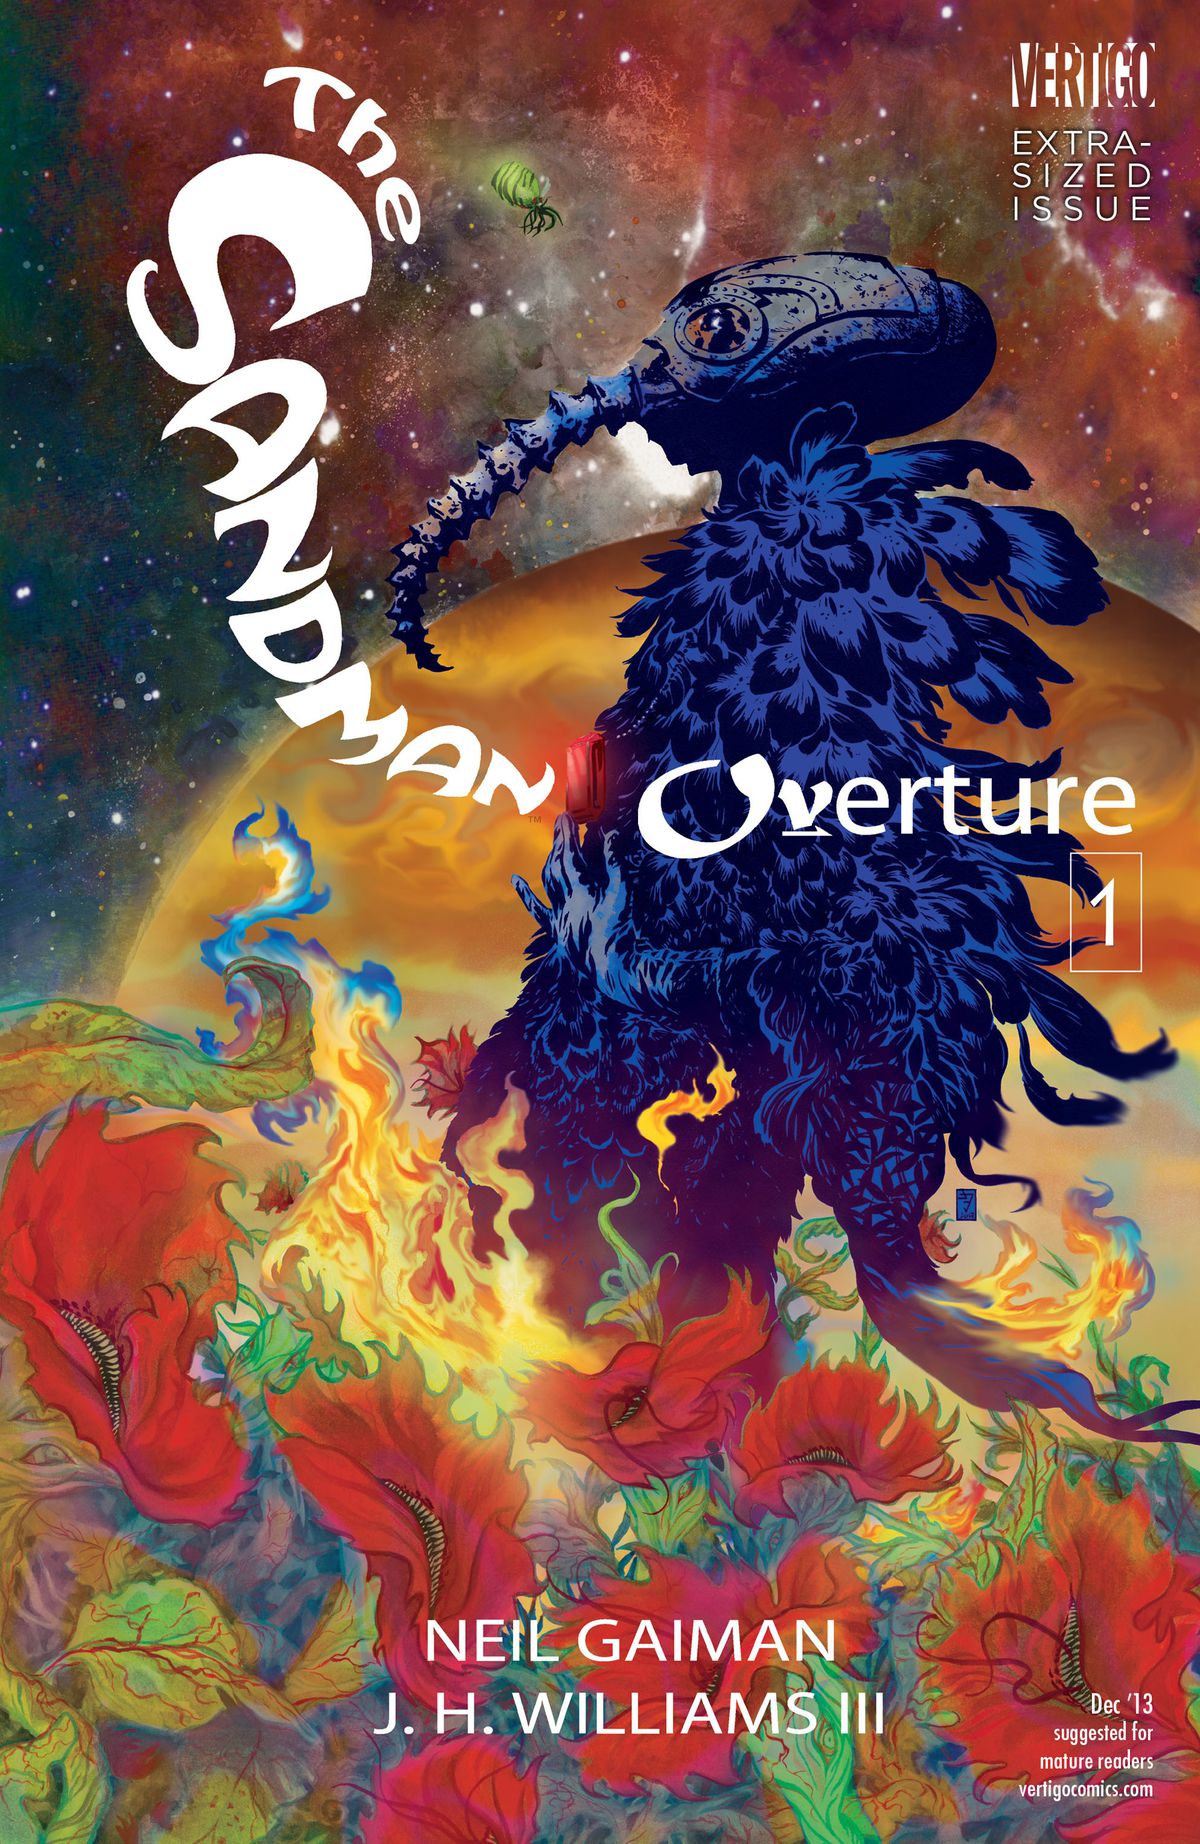 The cover of Sandman: Overture #1, DC Vertigo (2013).